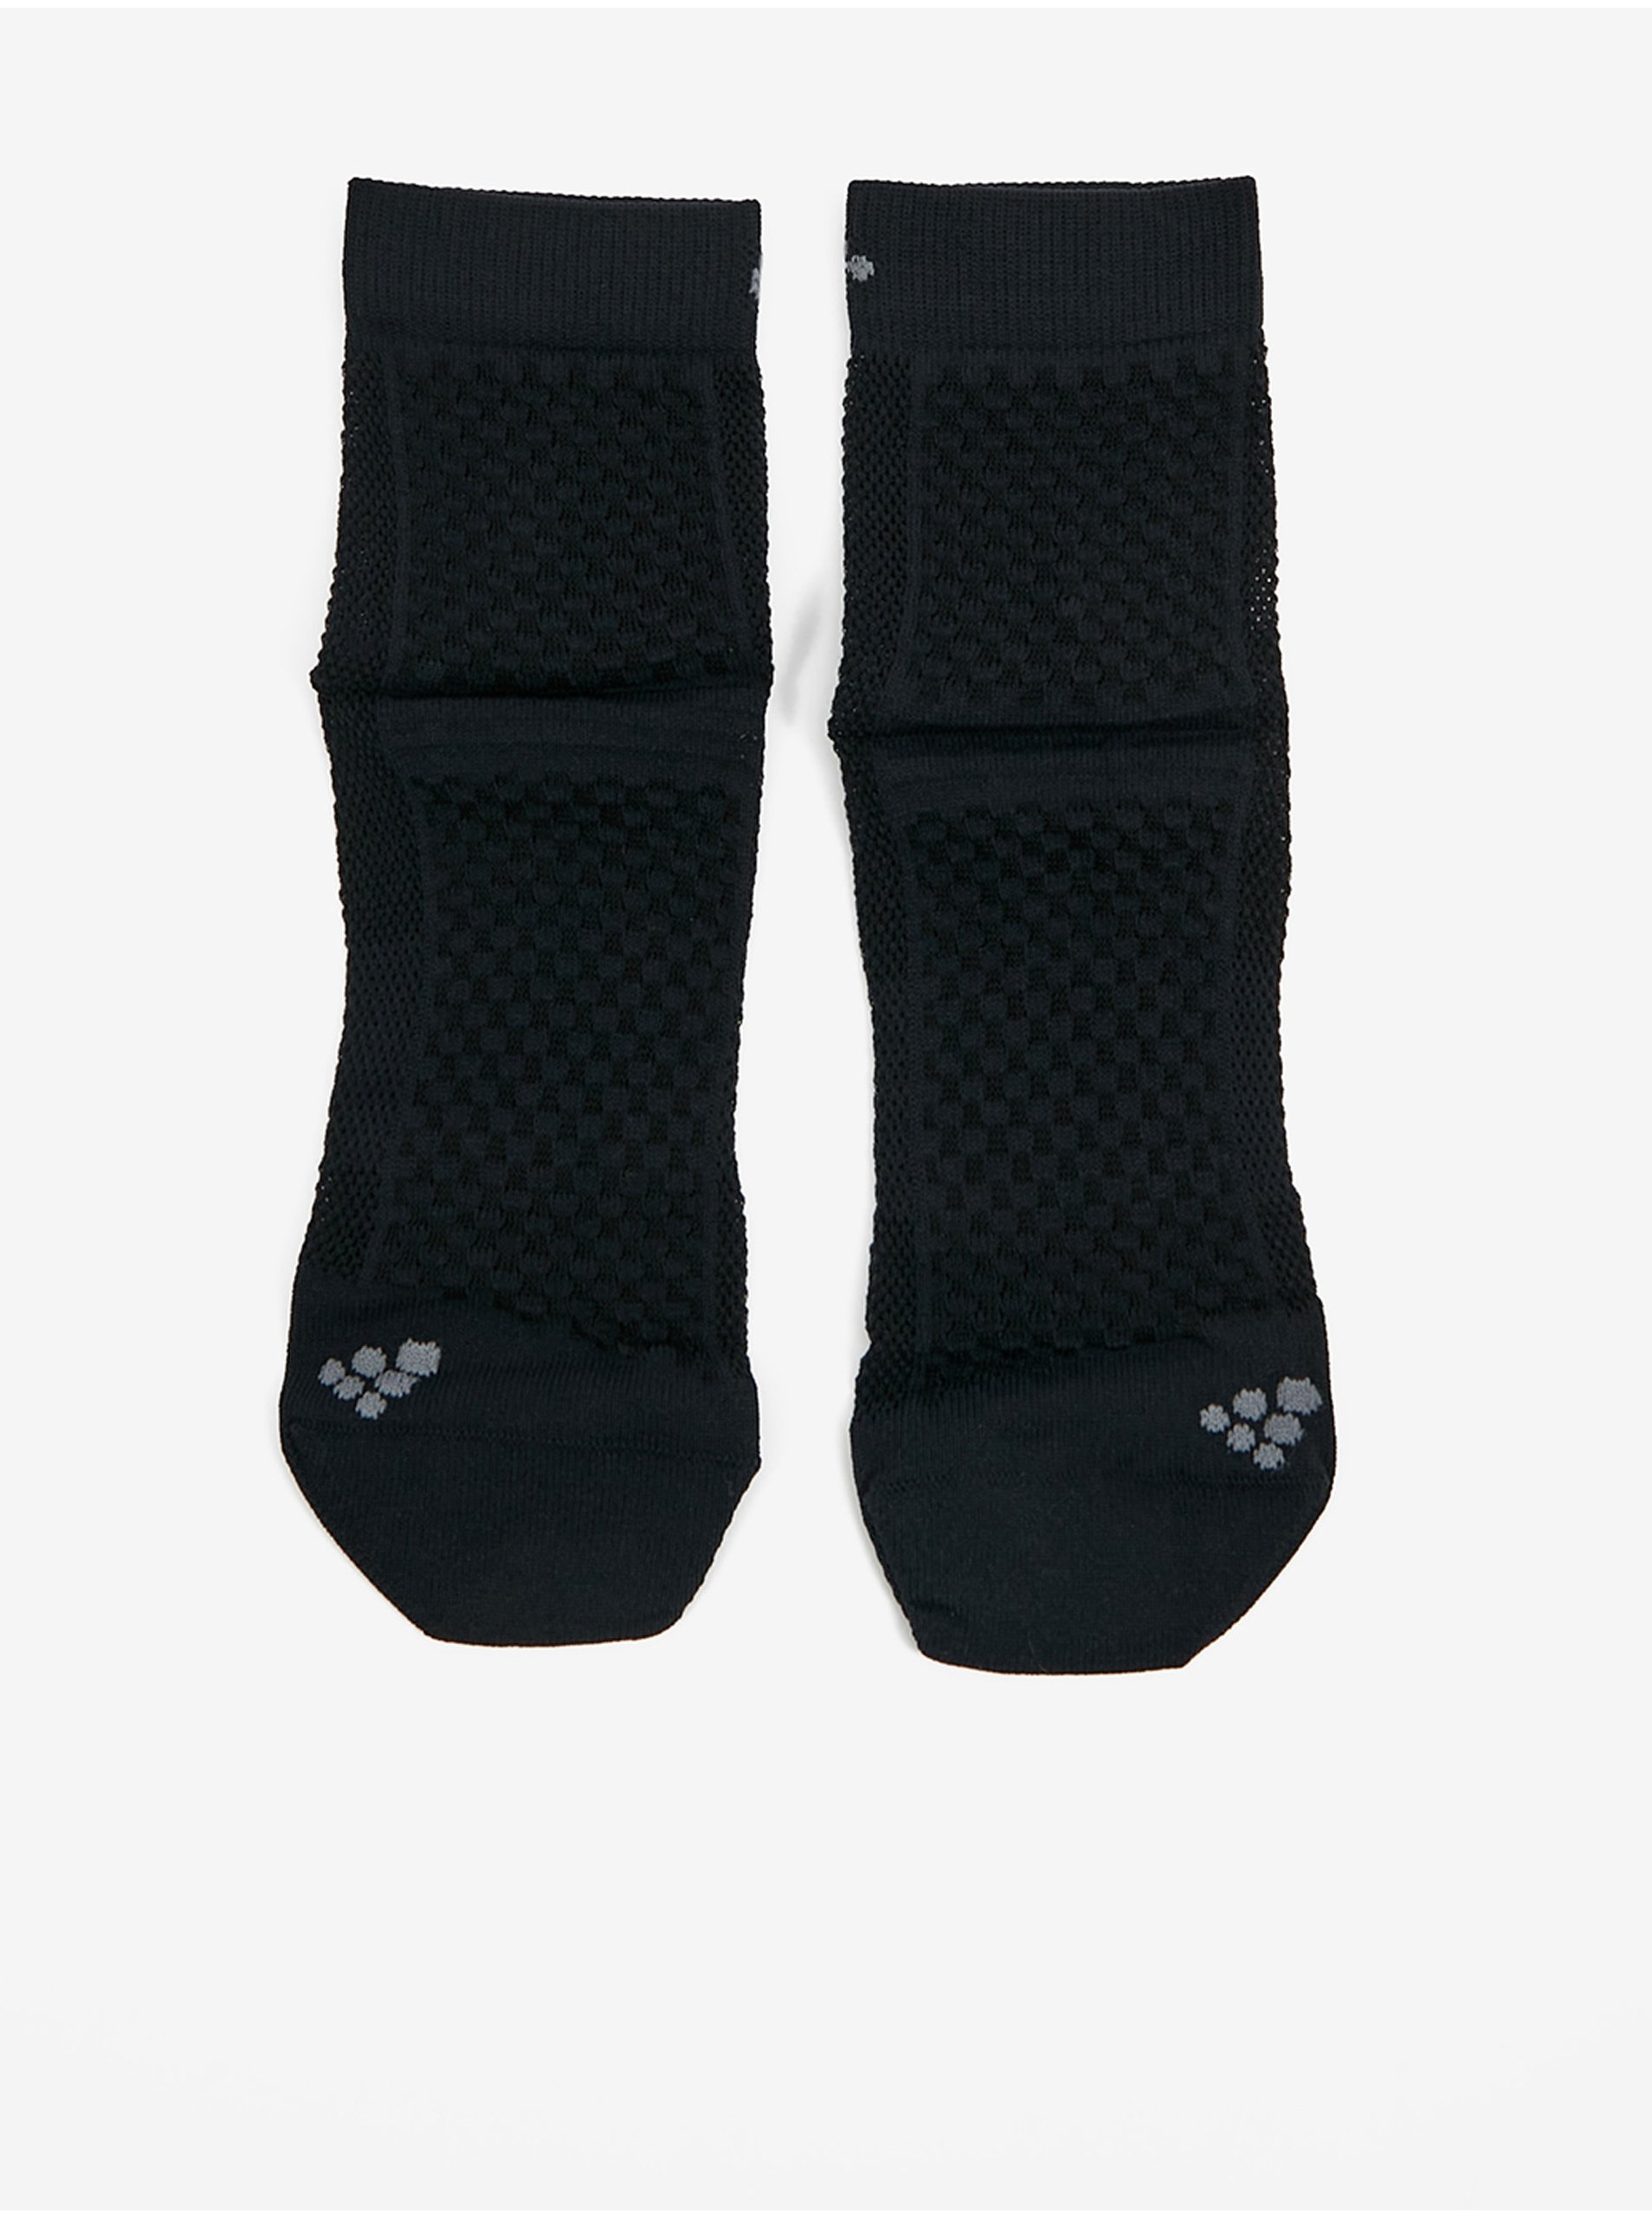 Lacno Súprava dvoch párov dámskych ponožiek v čiernej farbe Craft